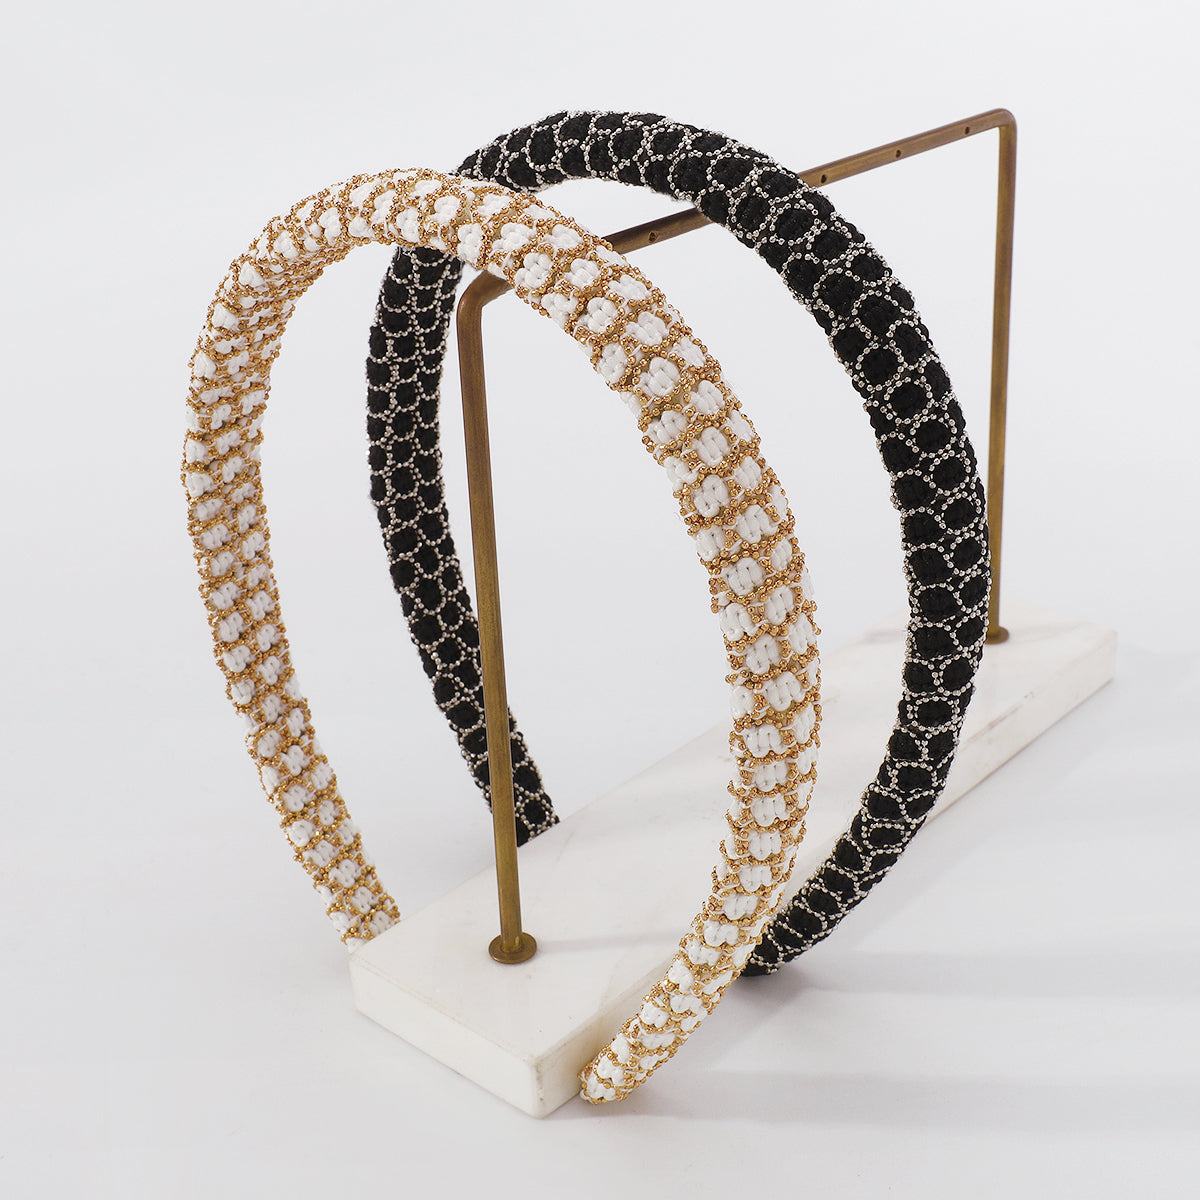 Fashion Bead Wrapped Thin Headband medyjewelry